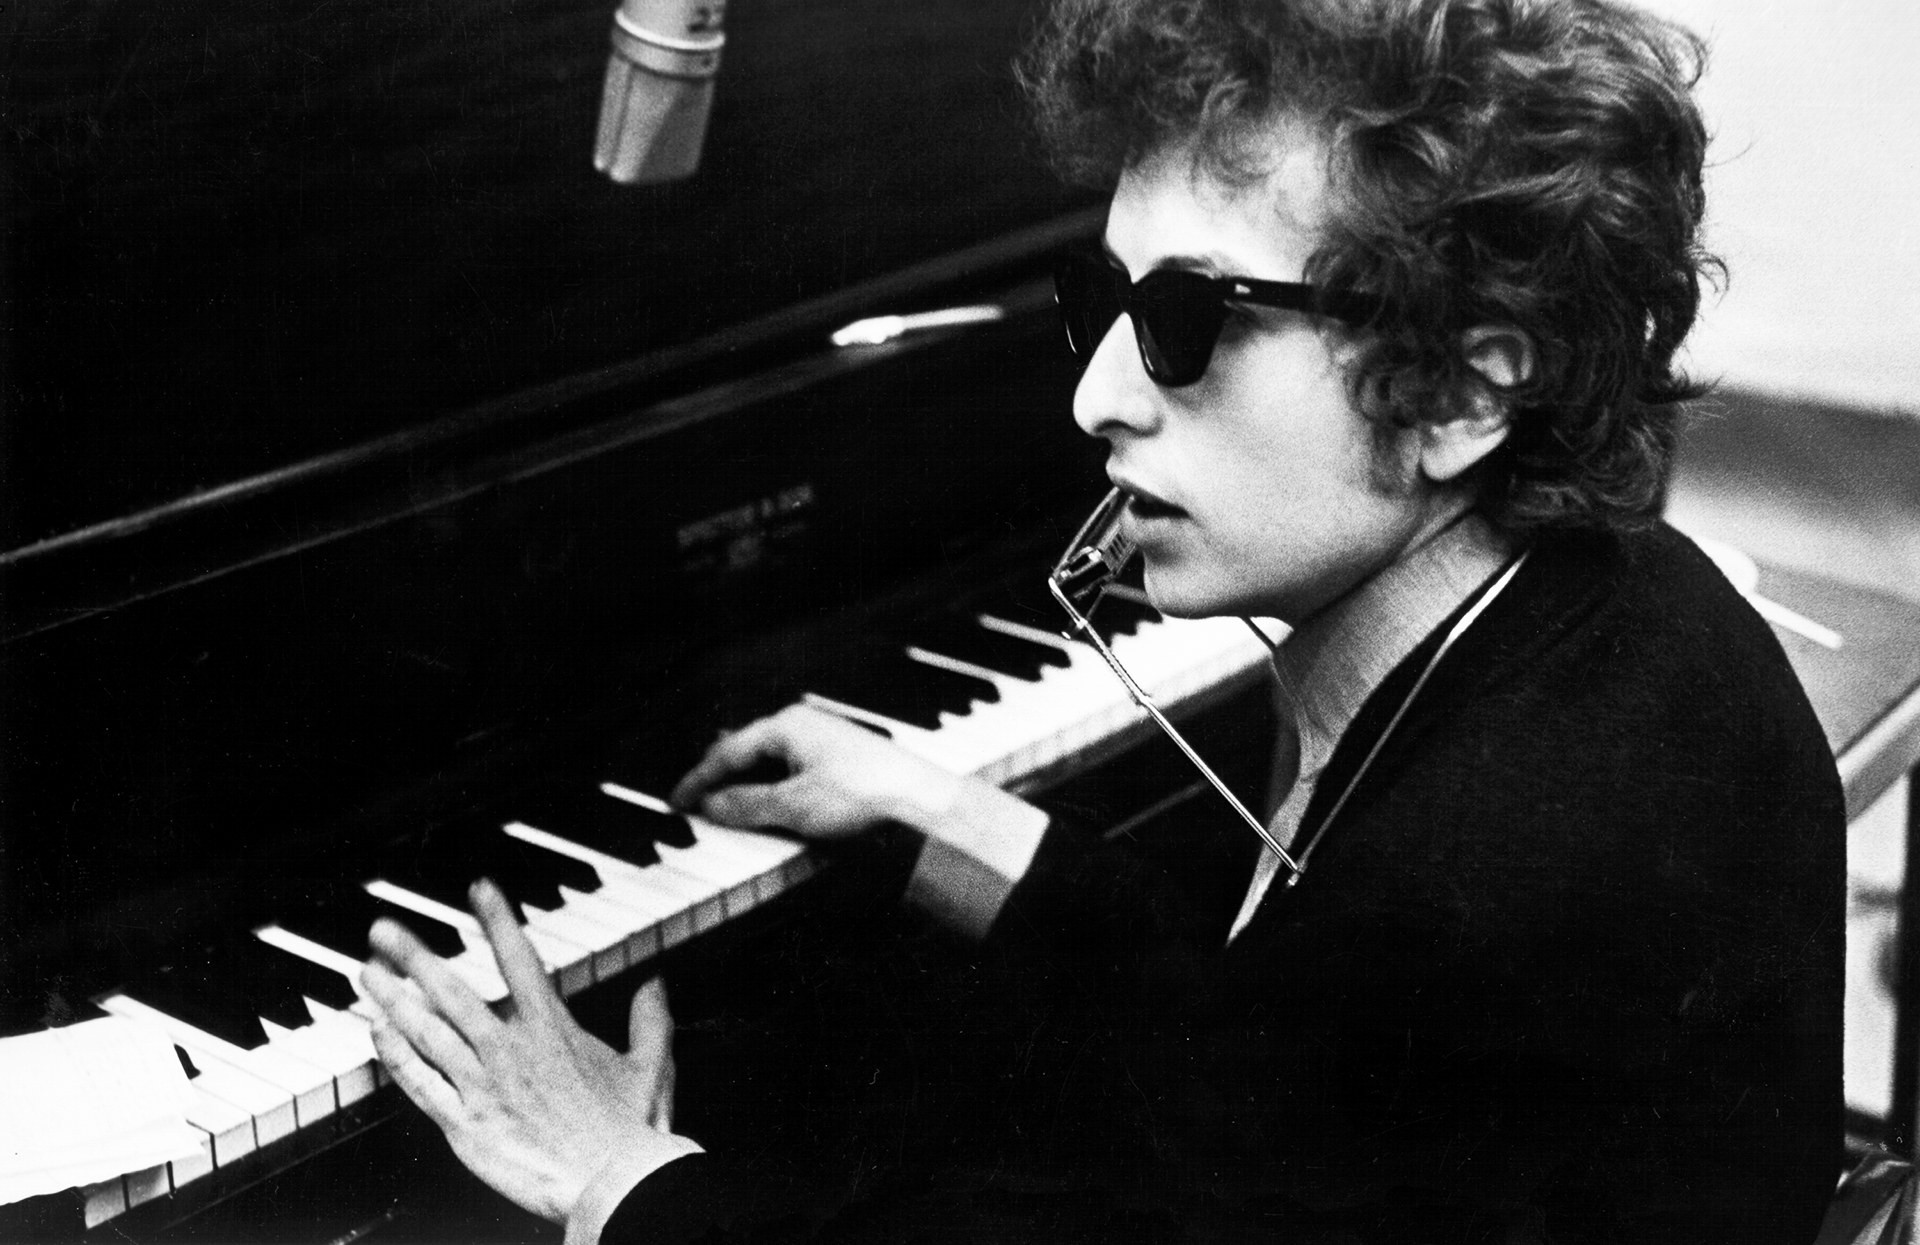 Мартин Скорсезе работает над документальным фильмом о Бобе Дилане